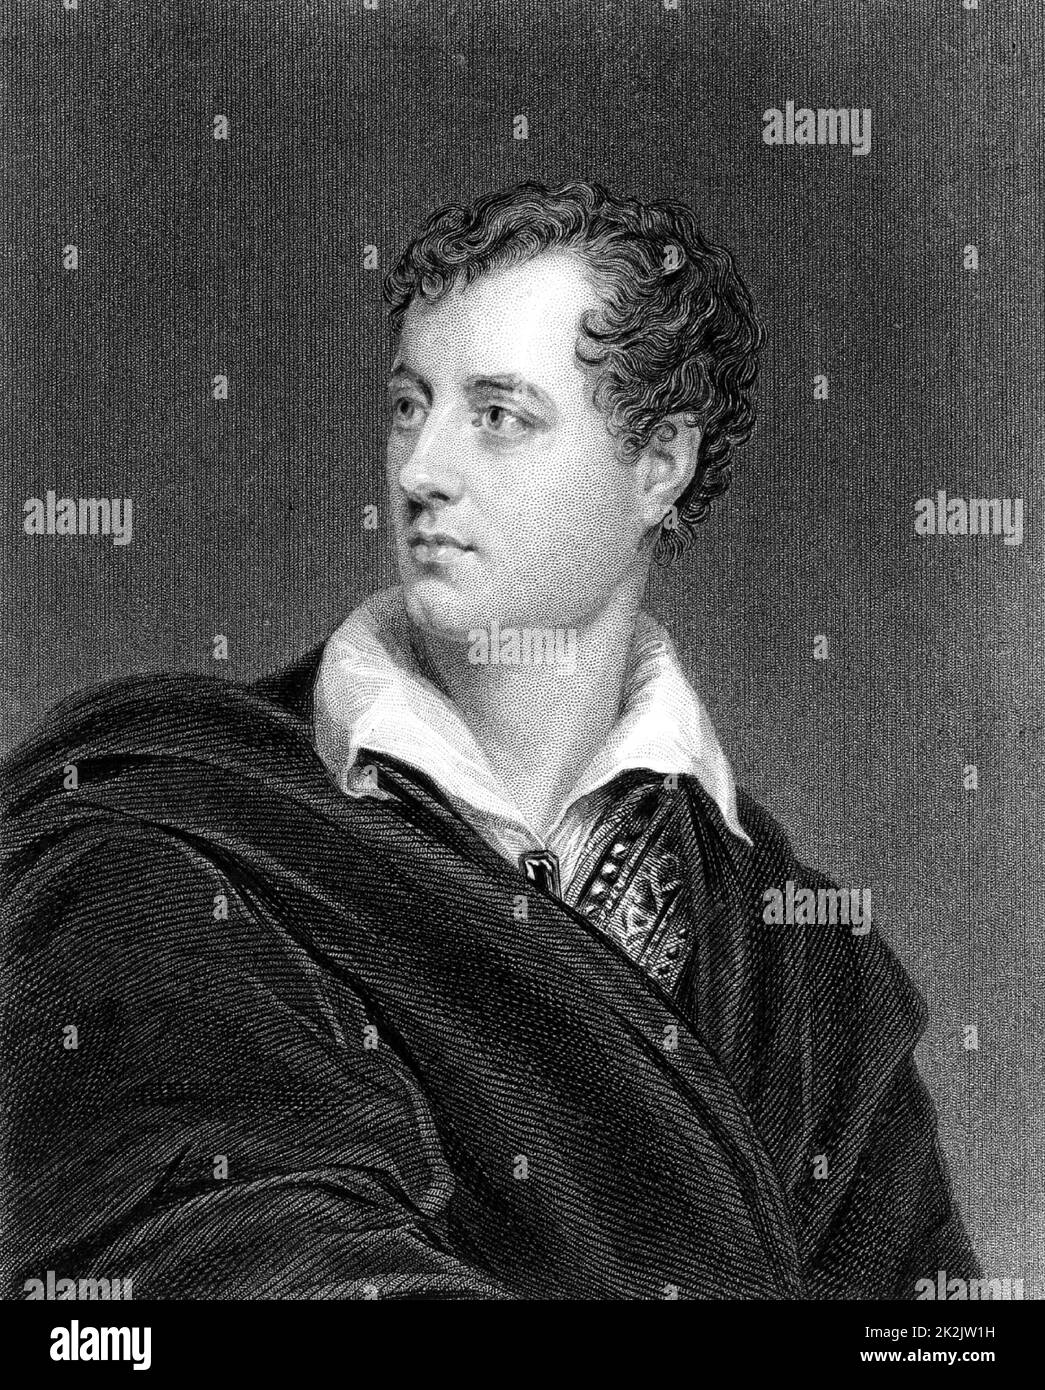 George Gordon, Lord Byron (1788-1824) poeta romantico inglese di discendenza scozzese. Incisione da 'The World's Great Men' (Londra, c1870). Foto Stock